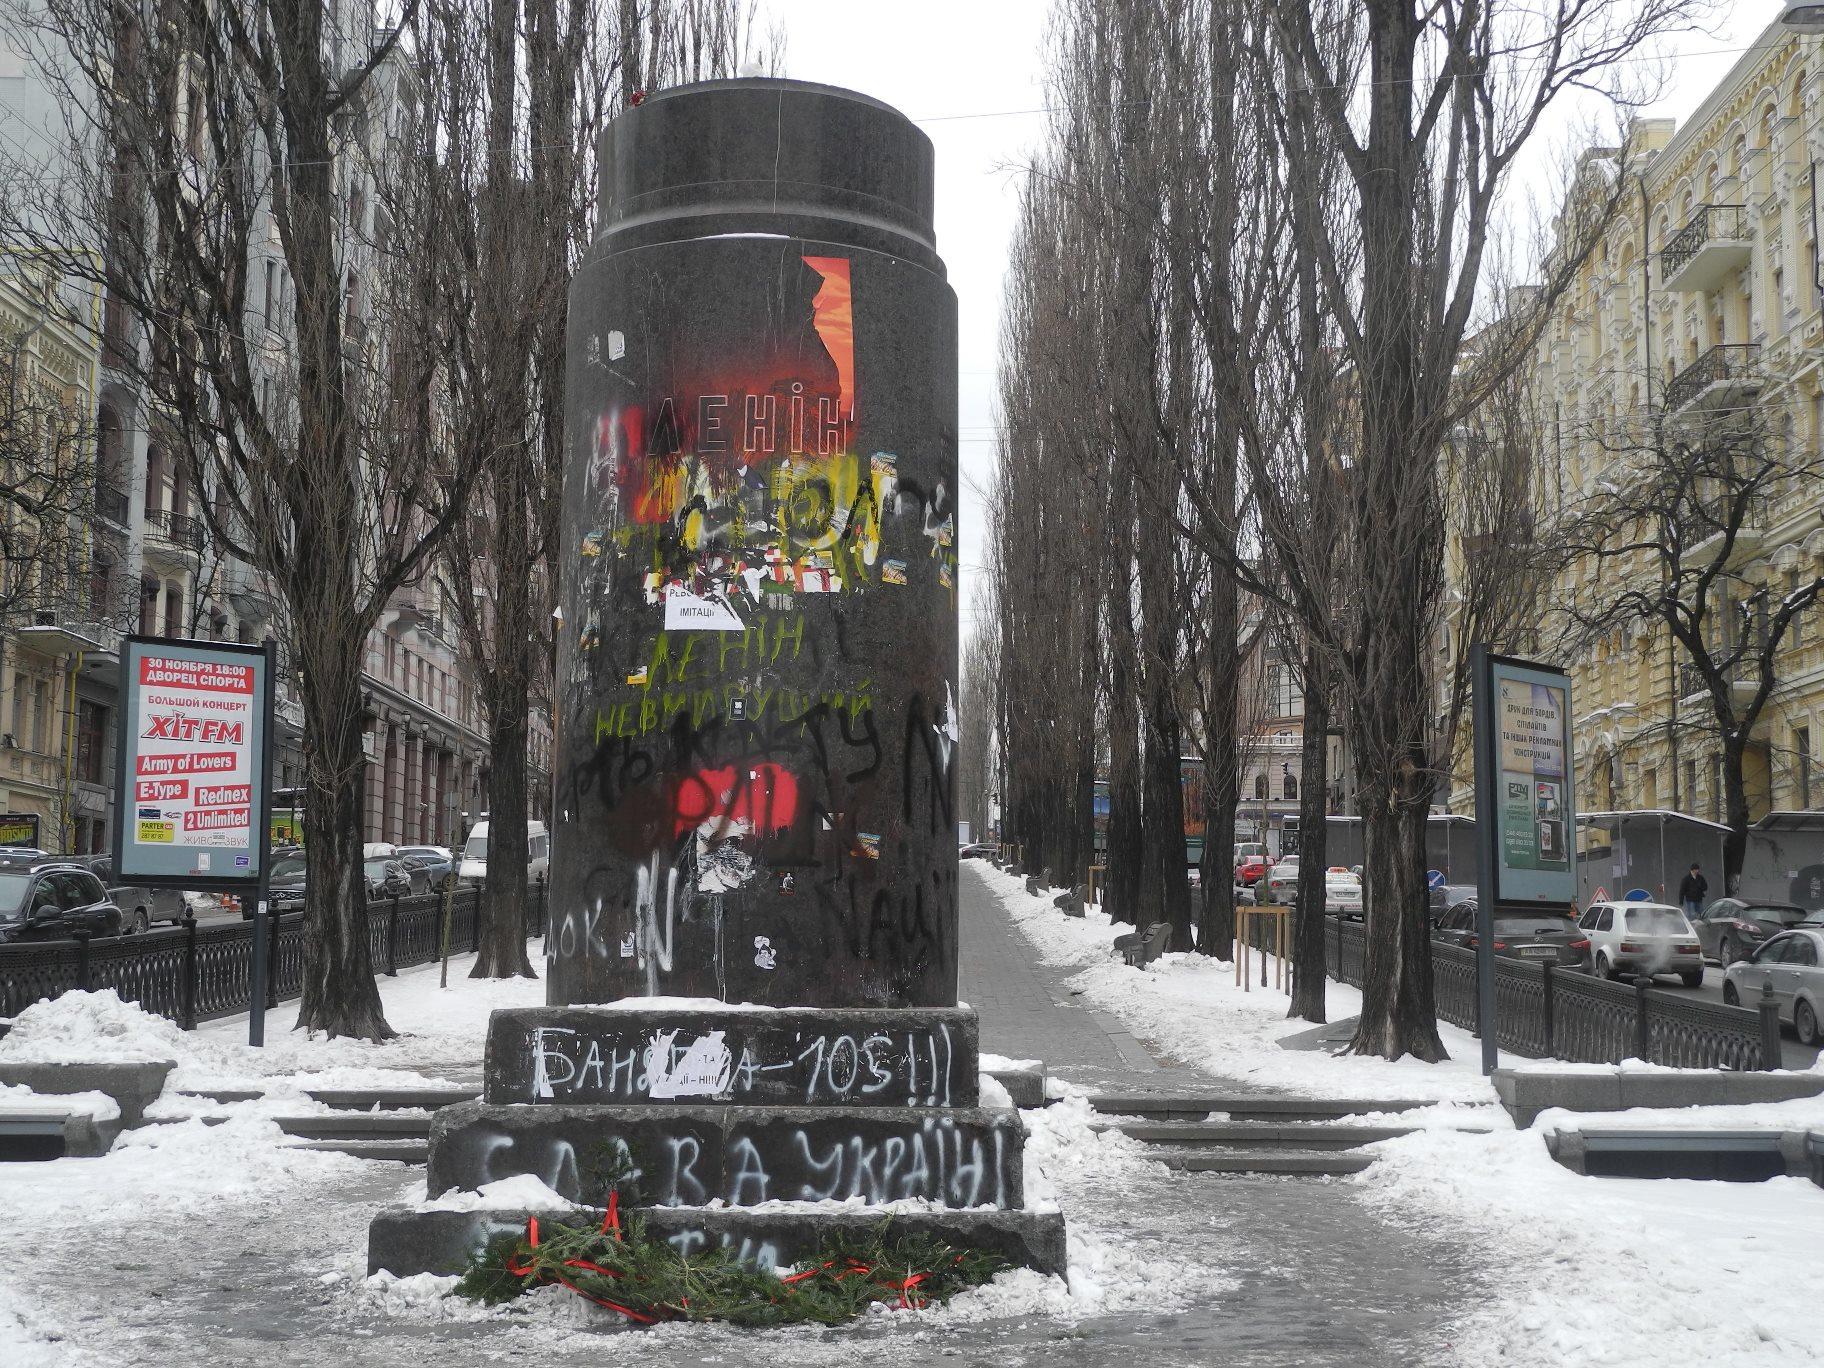 In der Bildmitte steht ein großer Sockel aus dunkelgrauem Granit mit der kyrillischen Aufschrift "Lenin". Der Sockel ist mit Graffiti besprüht. Die Statue fehlt.